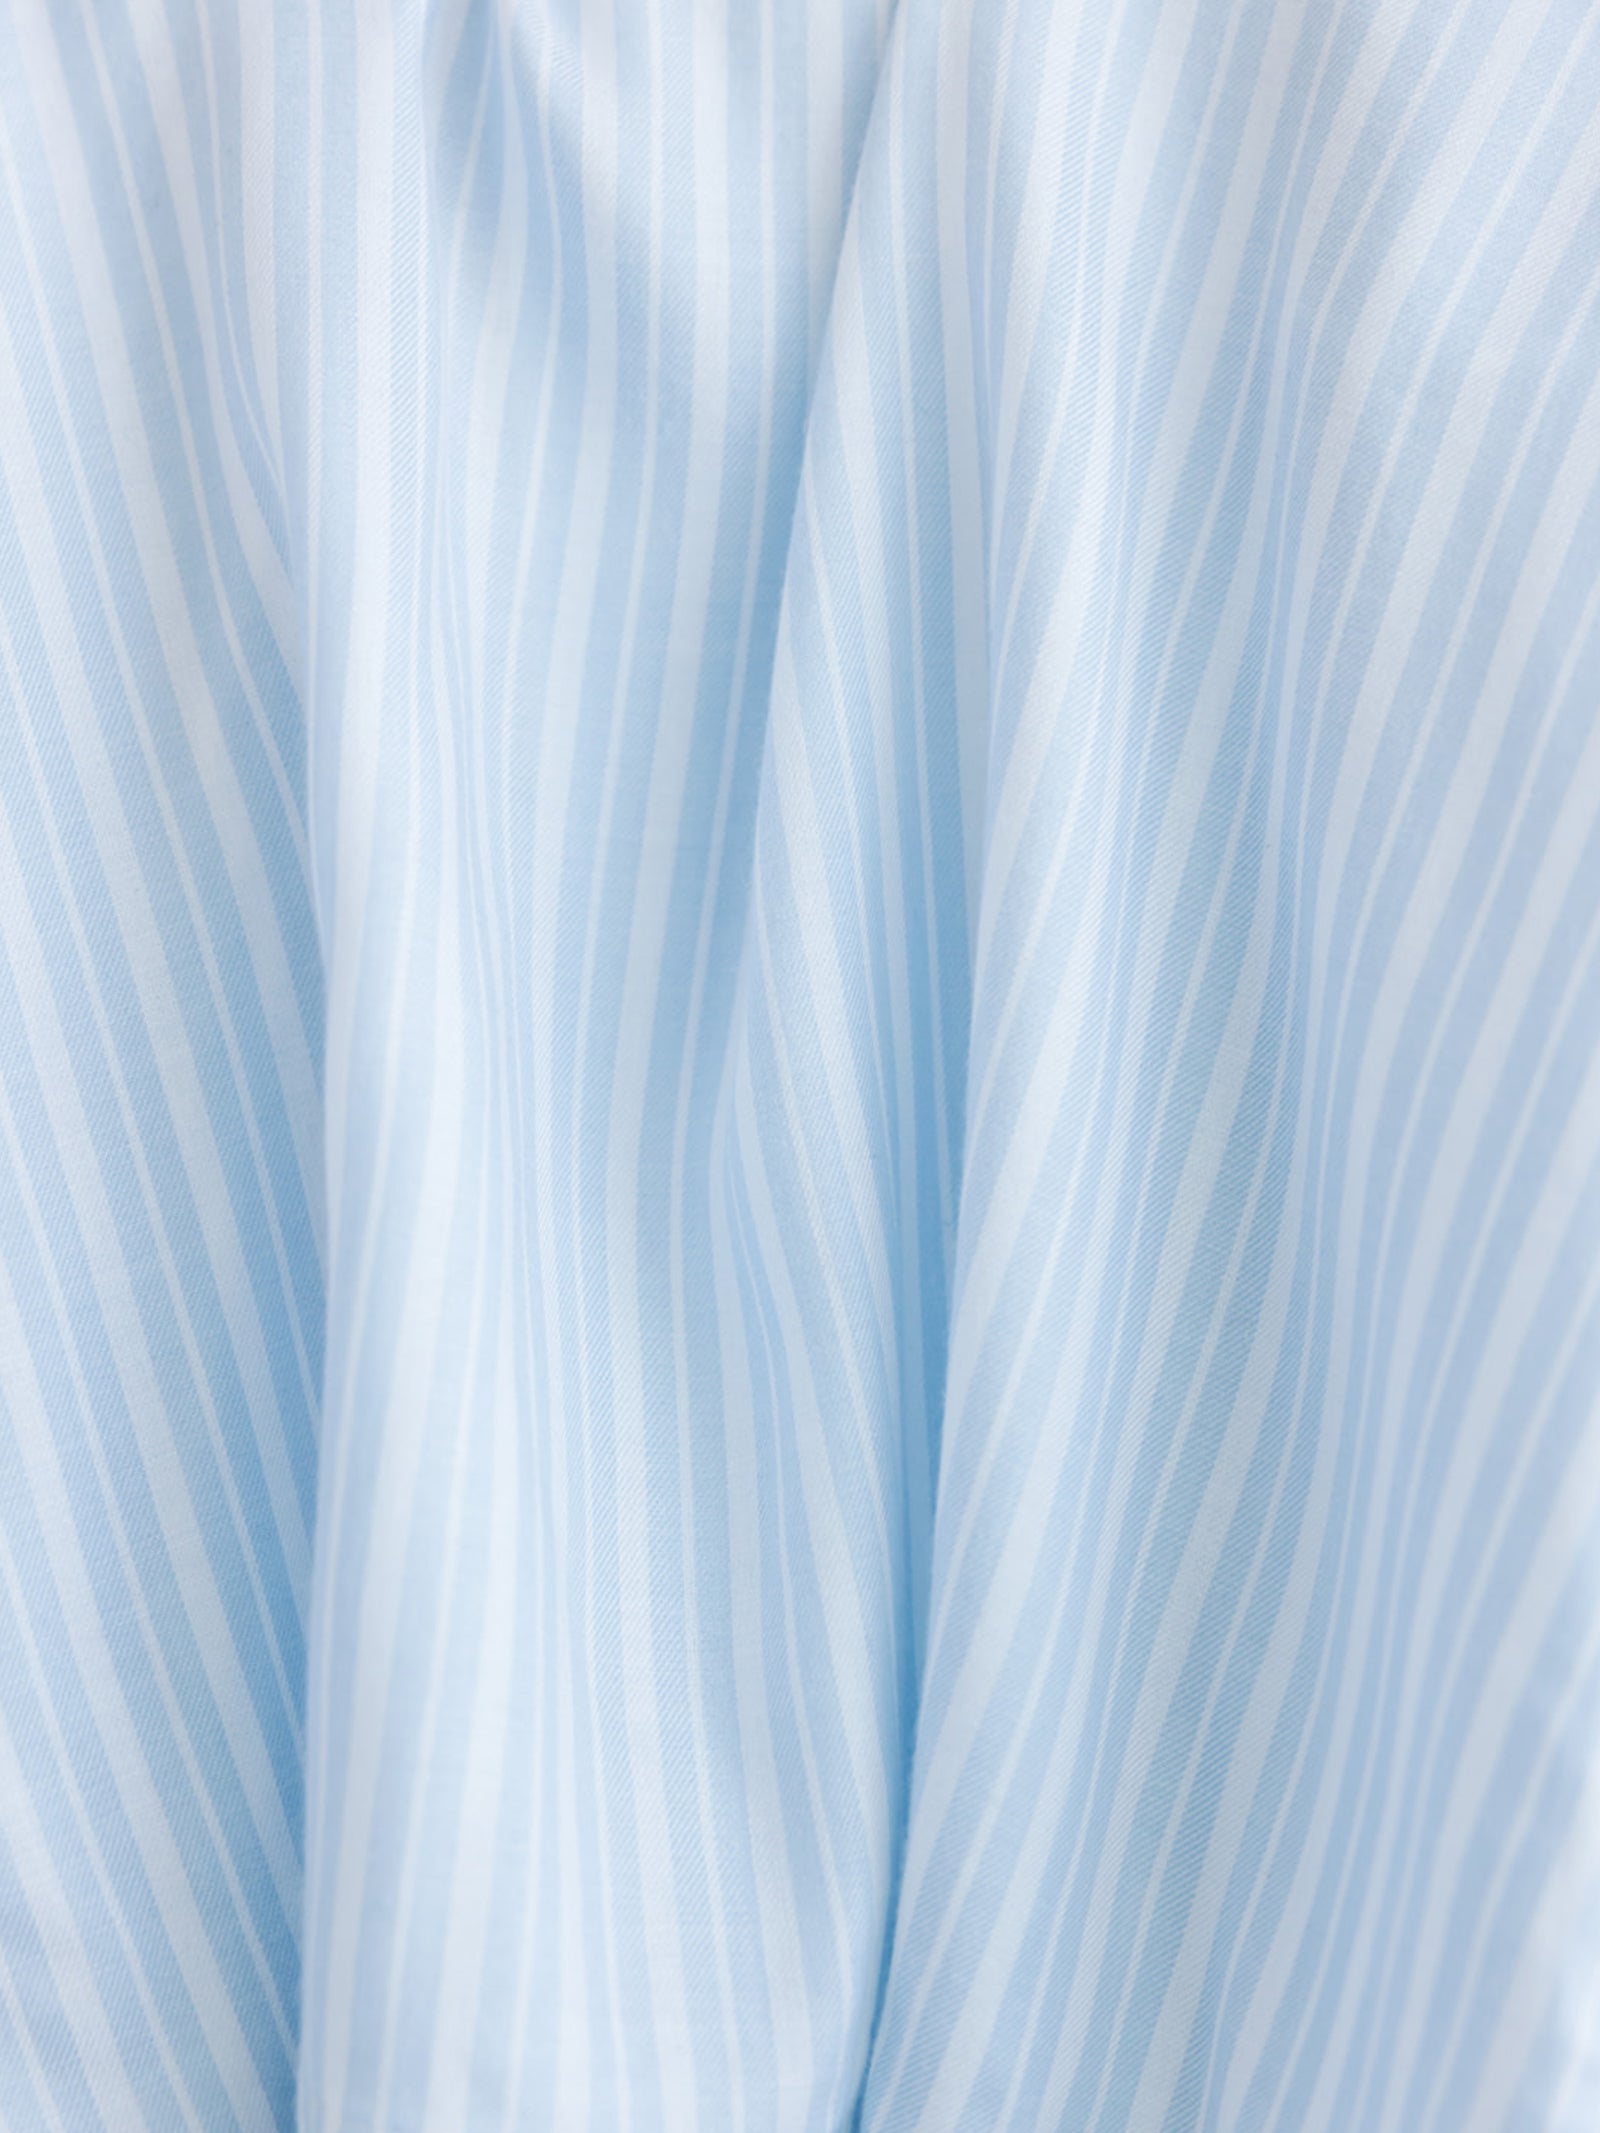 Close up of spring blue stripe pajama fabric 